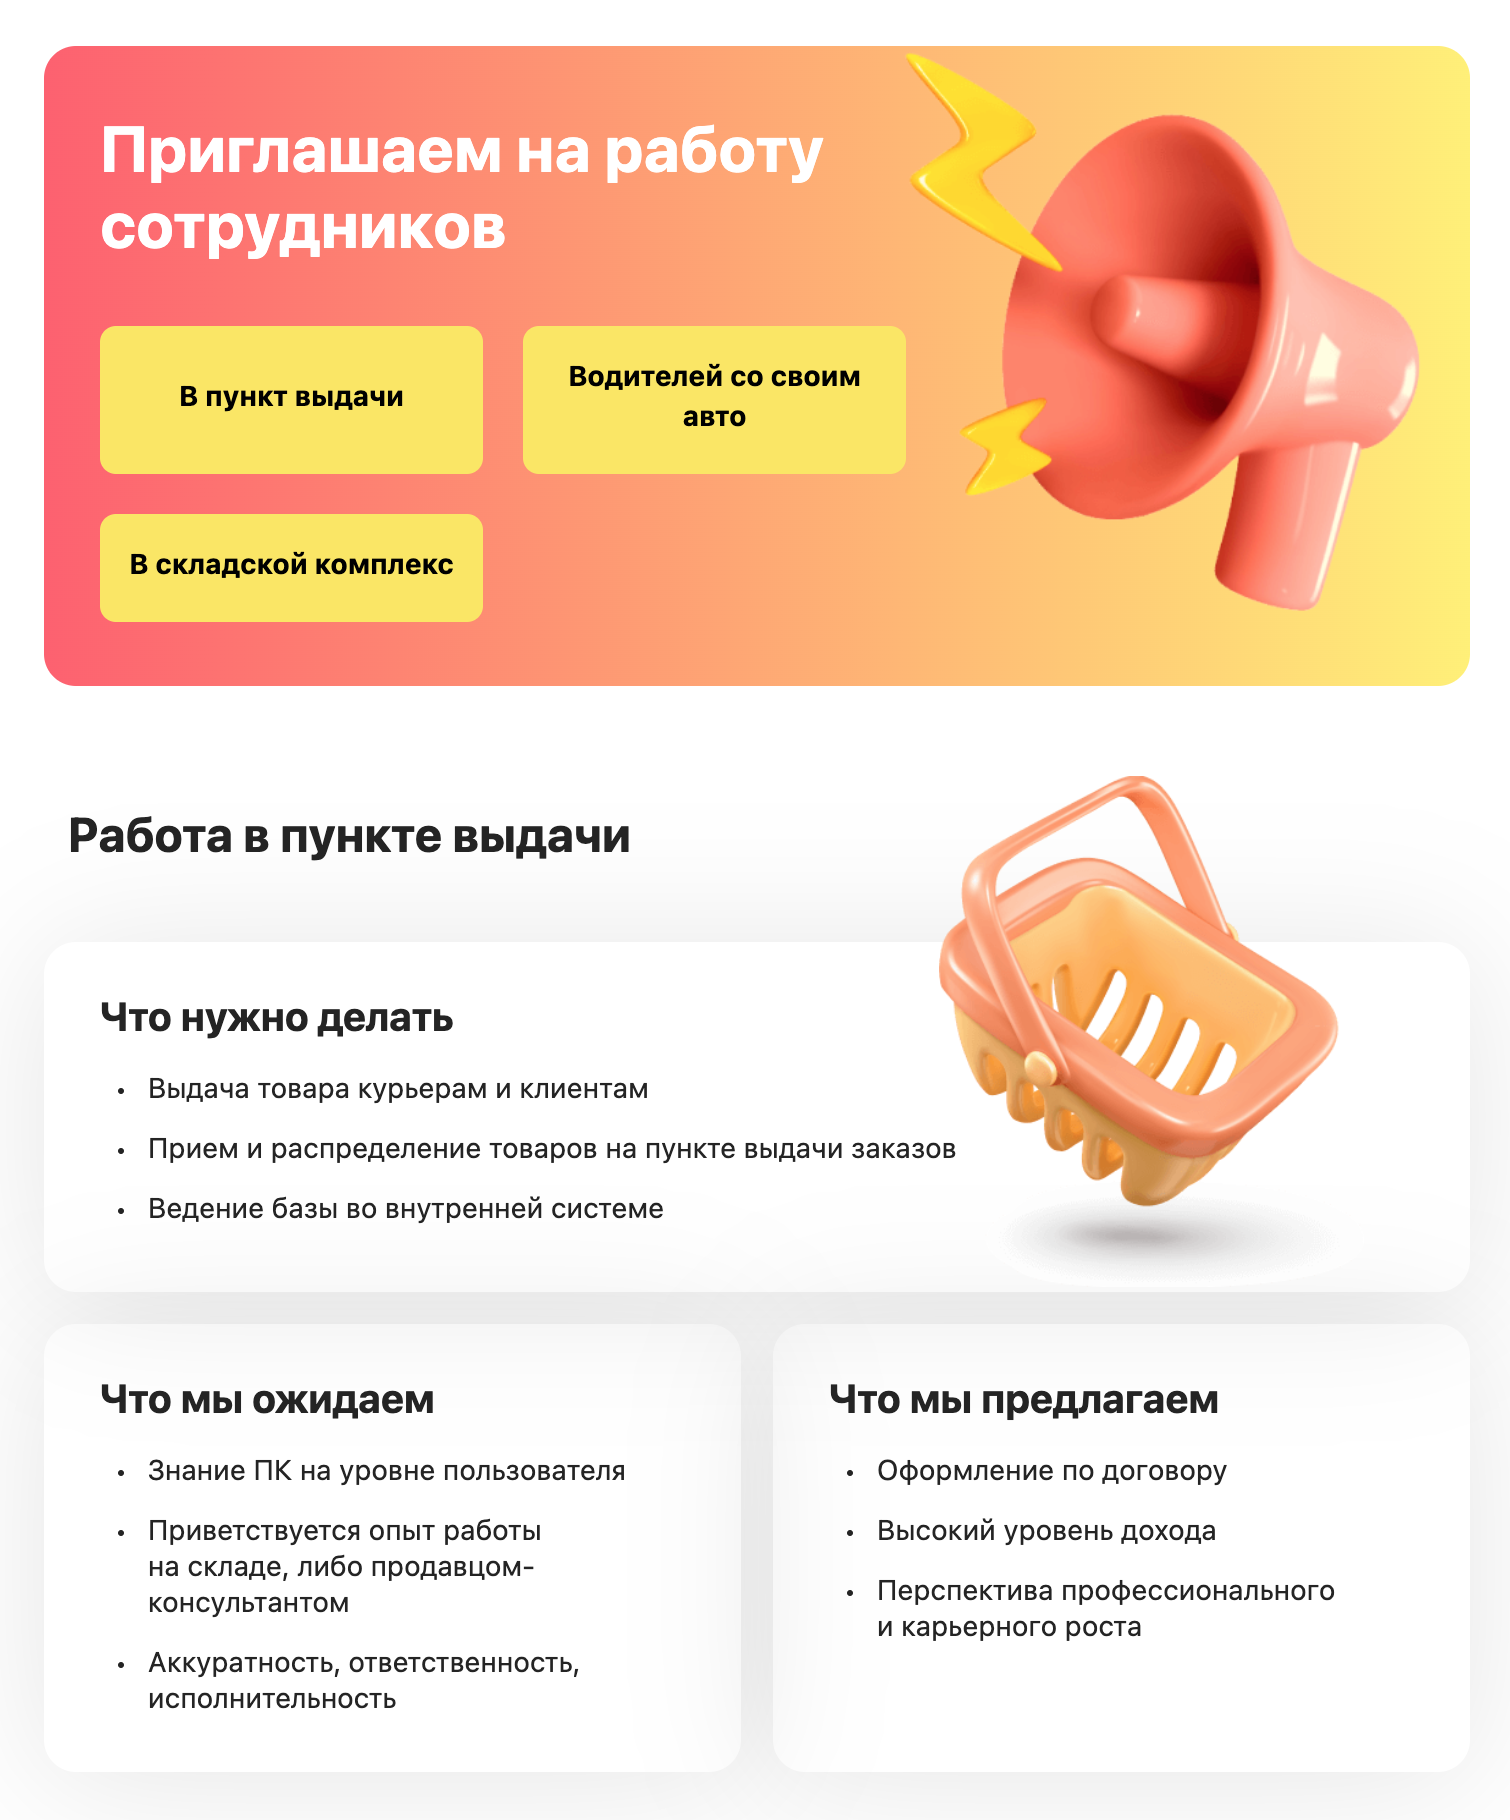 На «Вайлдберриз» оформление на работу происходит через приложение. Источник: wildberries.ru